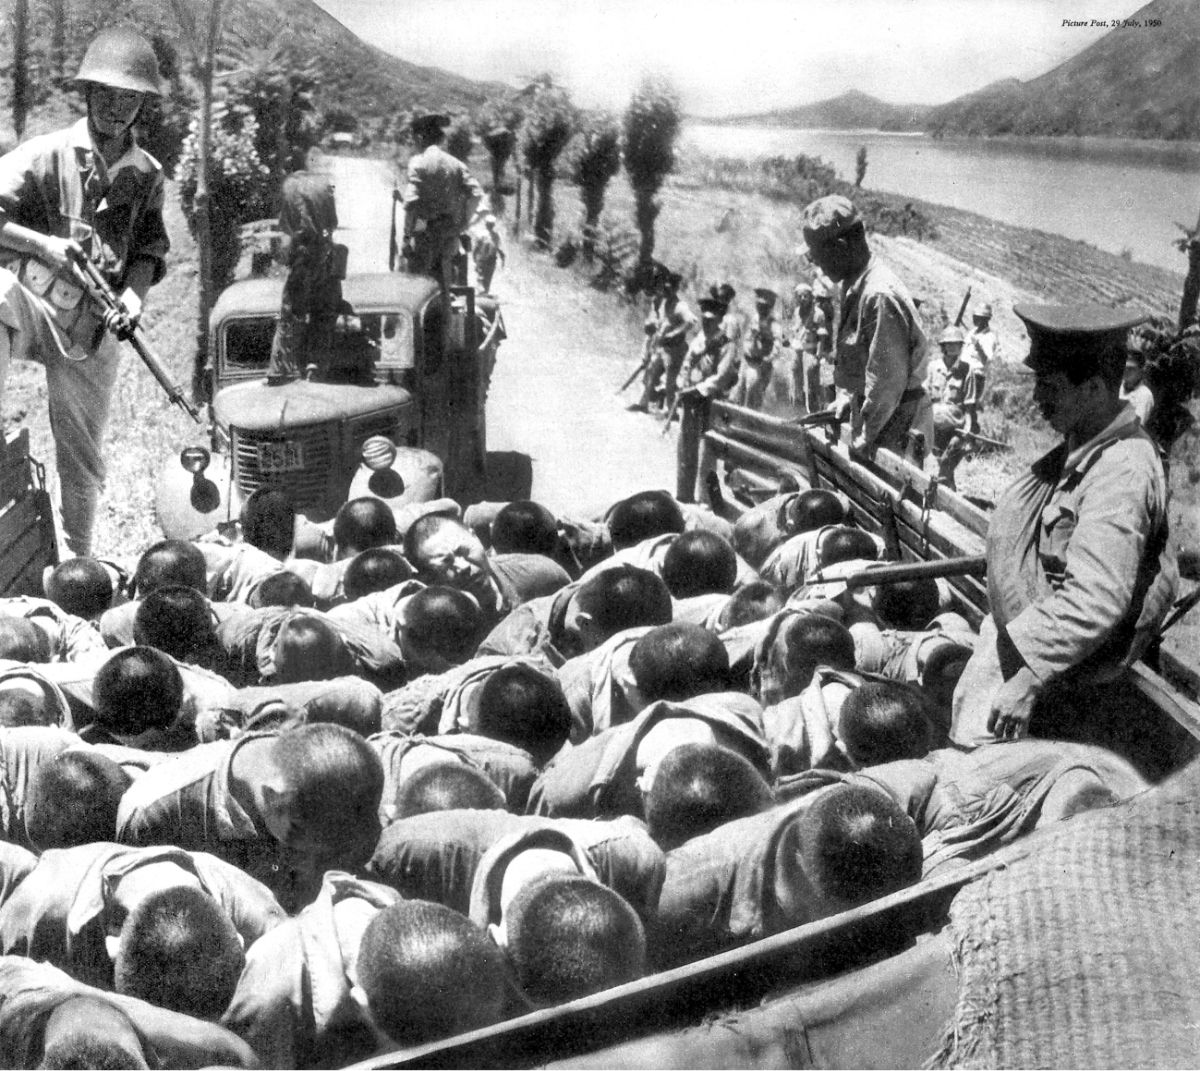 1950년 7월 영국의 사진잡지 《픽처 포스트(Picture Post)》에 ‘War in Korea’라는 제목으로 실린 사진. 공주형무소 수감자들이 트럭에 실려 학살 현장에 끌려가는 모습이다(자료 사진). @Picture Post